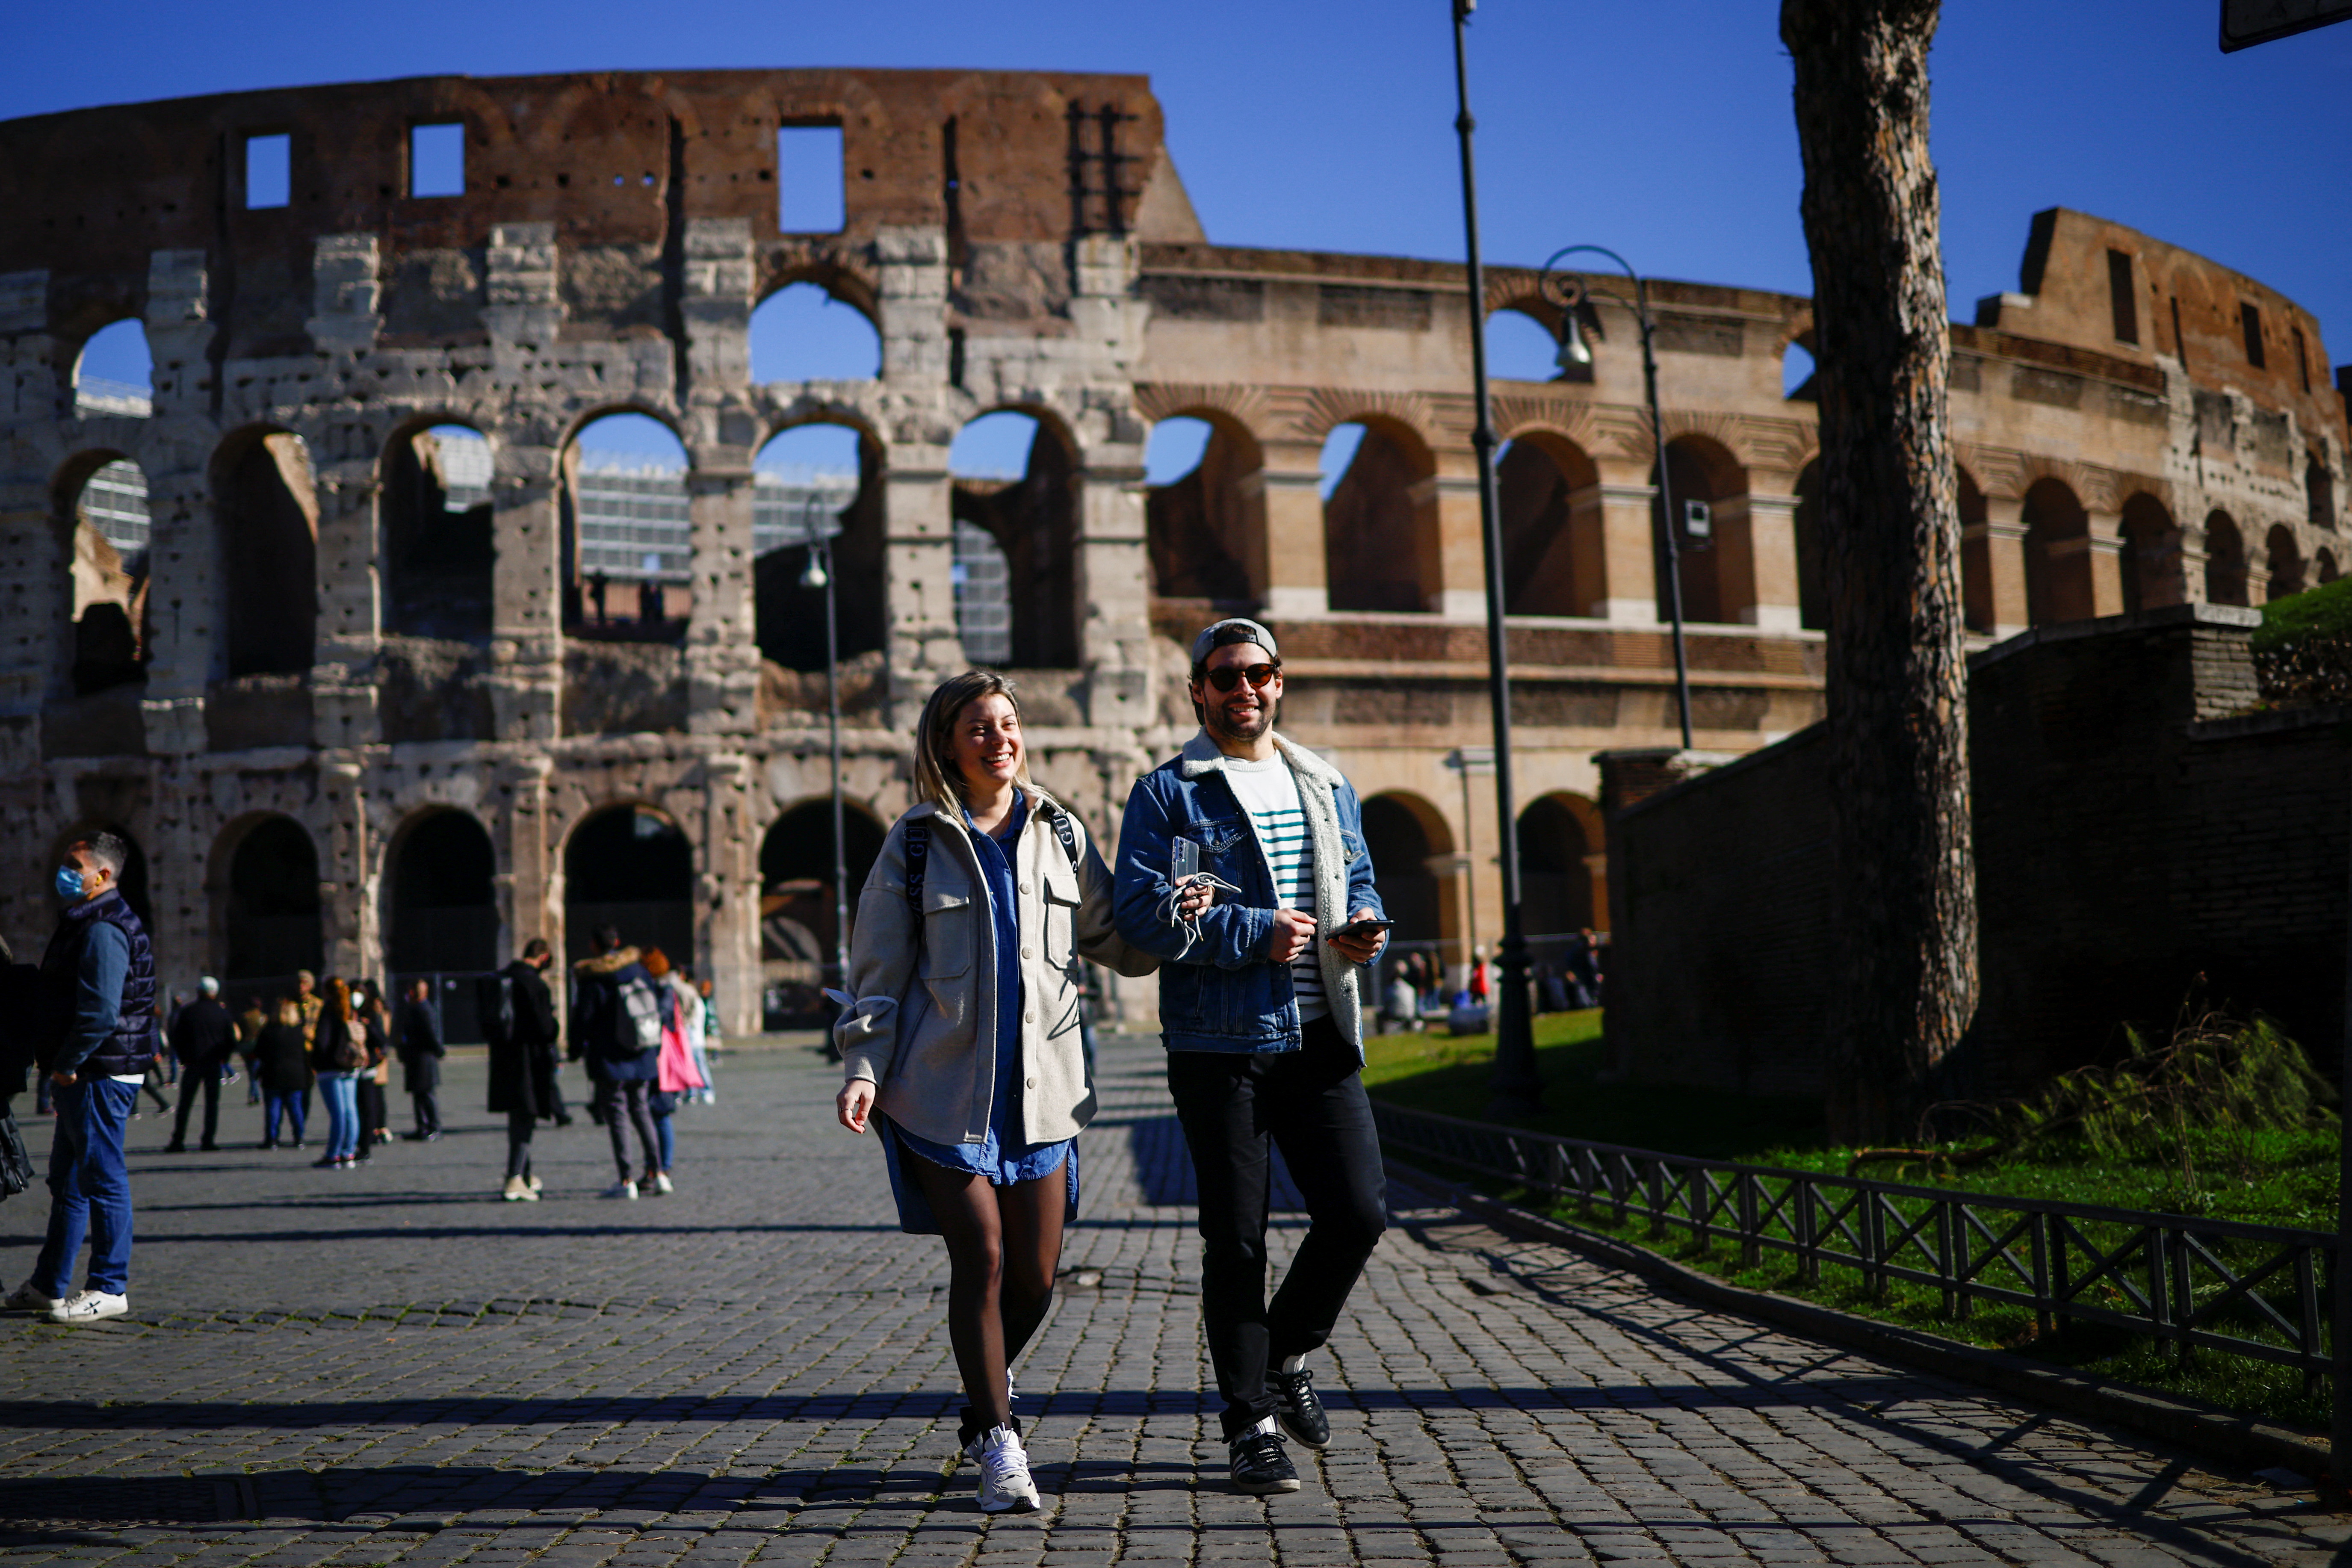 La gente camina cerca del Coliseo sin usar máscaras faciales el día que el gobierno de Italia eliminó la obligación de usar máscaras al aire libre luego de una disminución en los casos de la enfermedad por coronavirus (COVID-19), en Roma, Italia, el 11 de febrero de 2022. REUTERS/Guglielmo Mangiapane